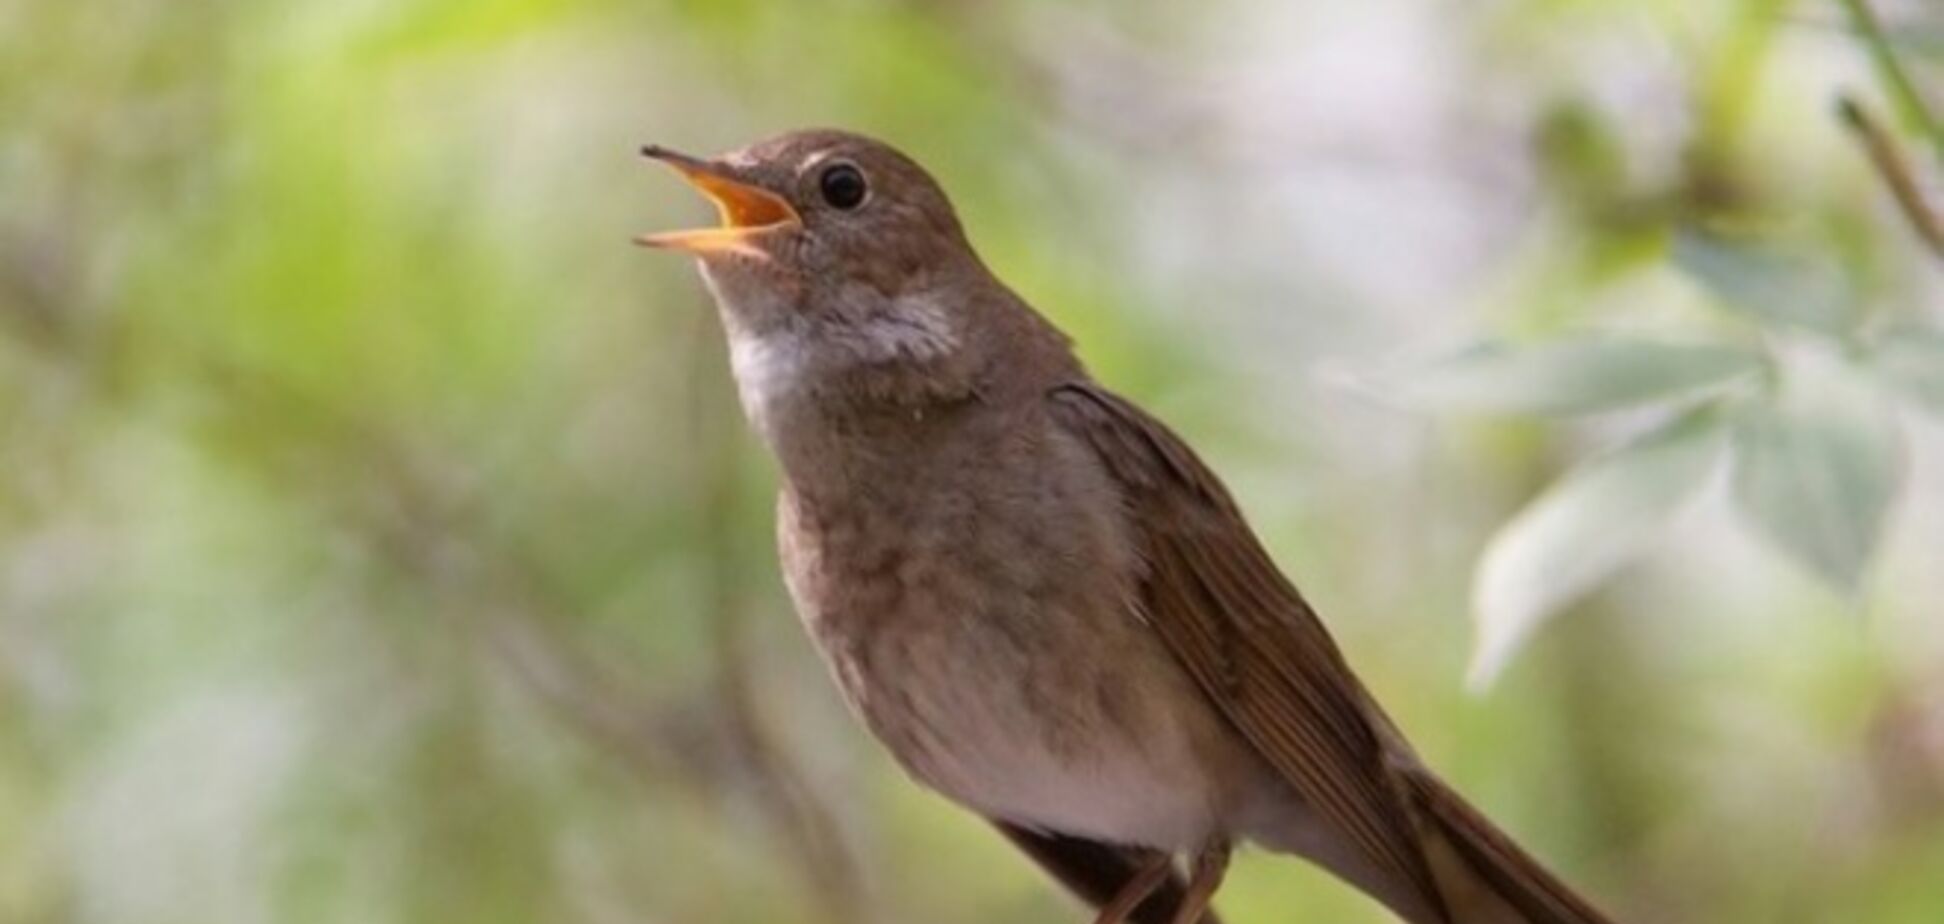 Пение птиц может вылечить от недугов